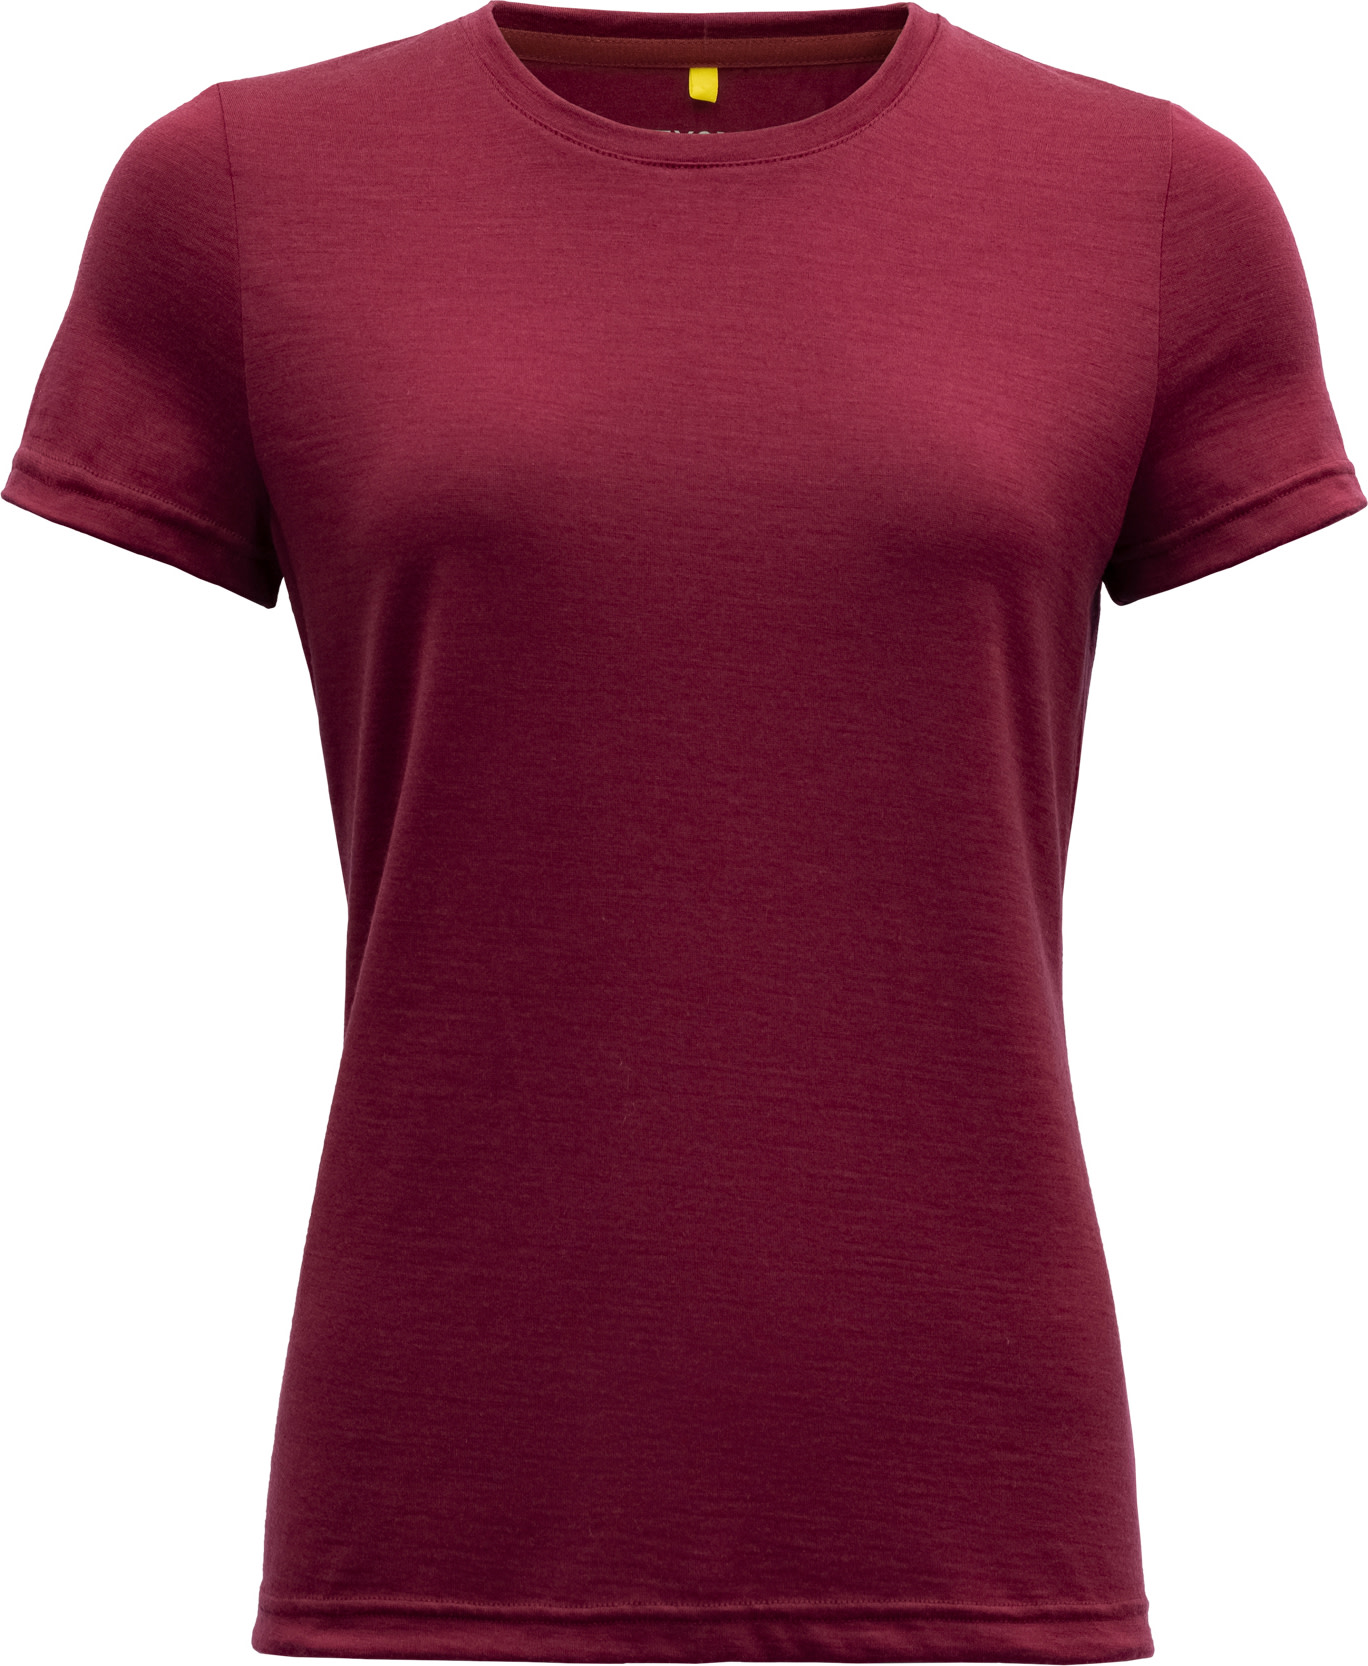 Women’s Breeze Merino 150 T-Shirt BEETROOT